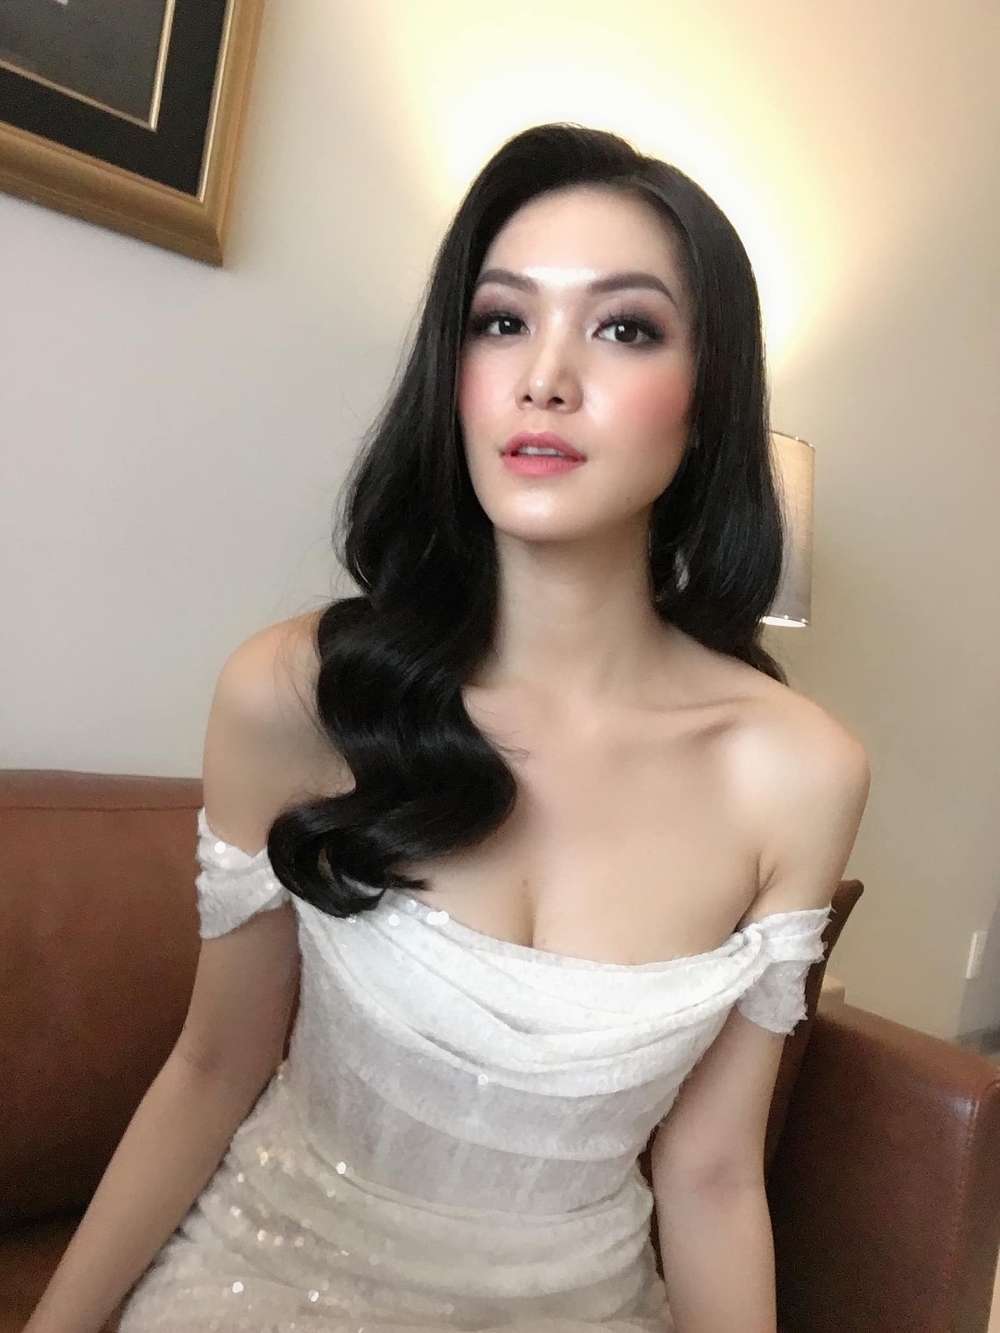 Hoa hậu Thùy Dung: Tôi chưa bao giờ muốn nổi tiếng và đã dần từ bỏ danh vọng hào nhoáng - Ảnh 3.